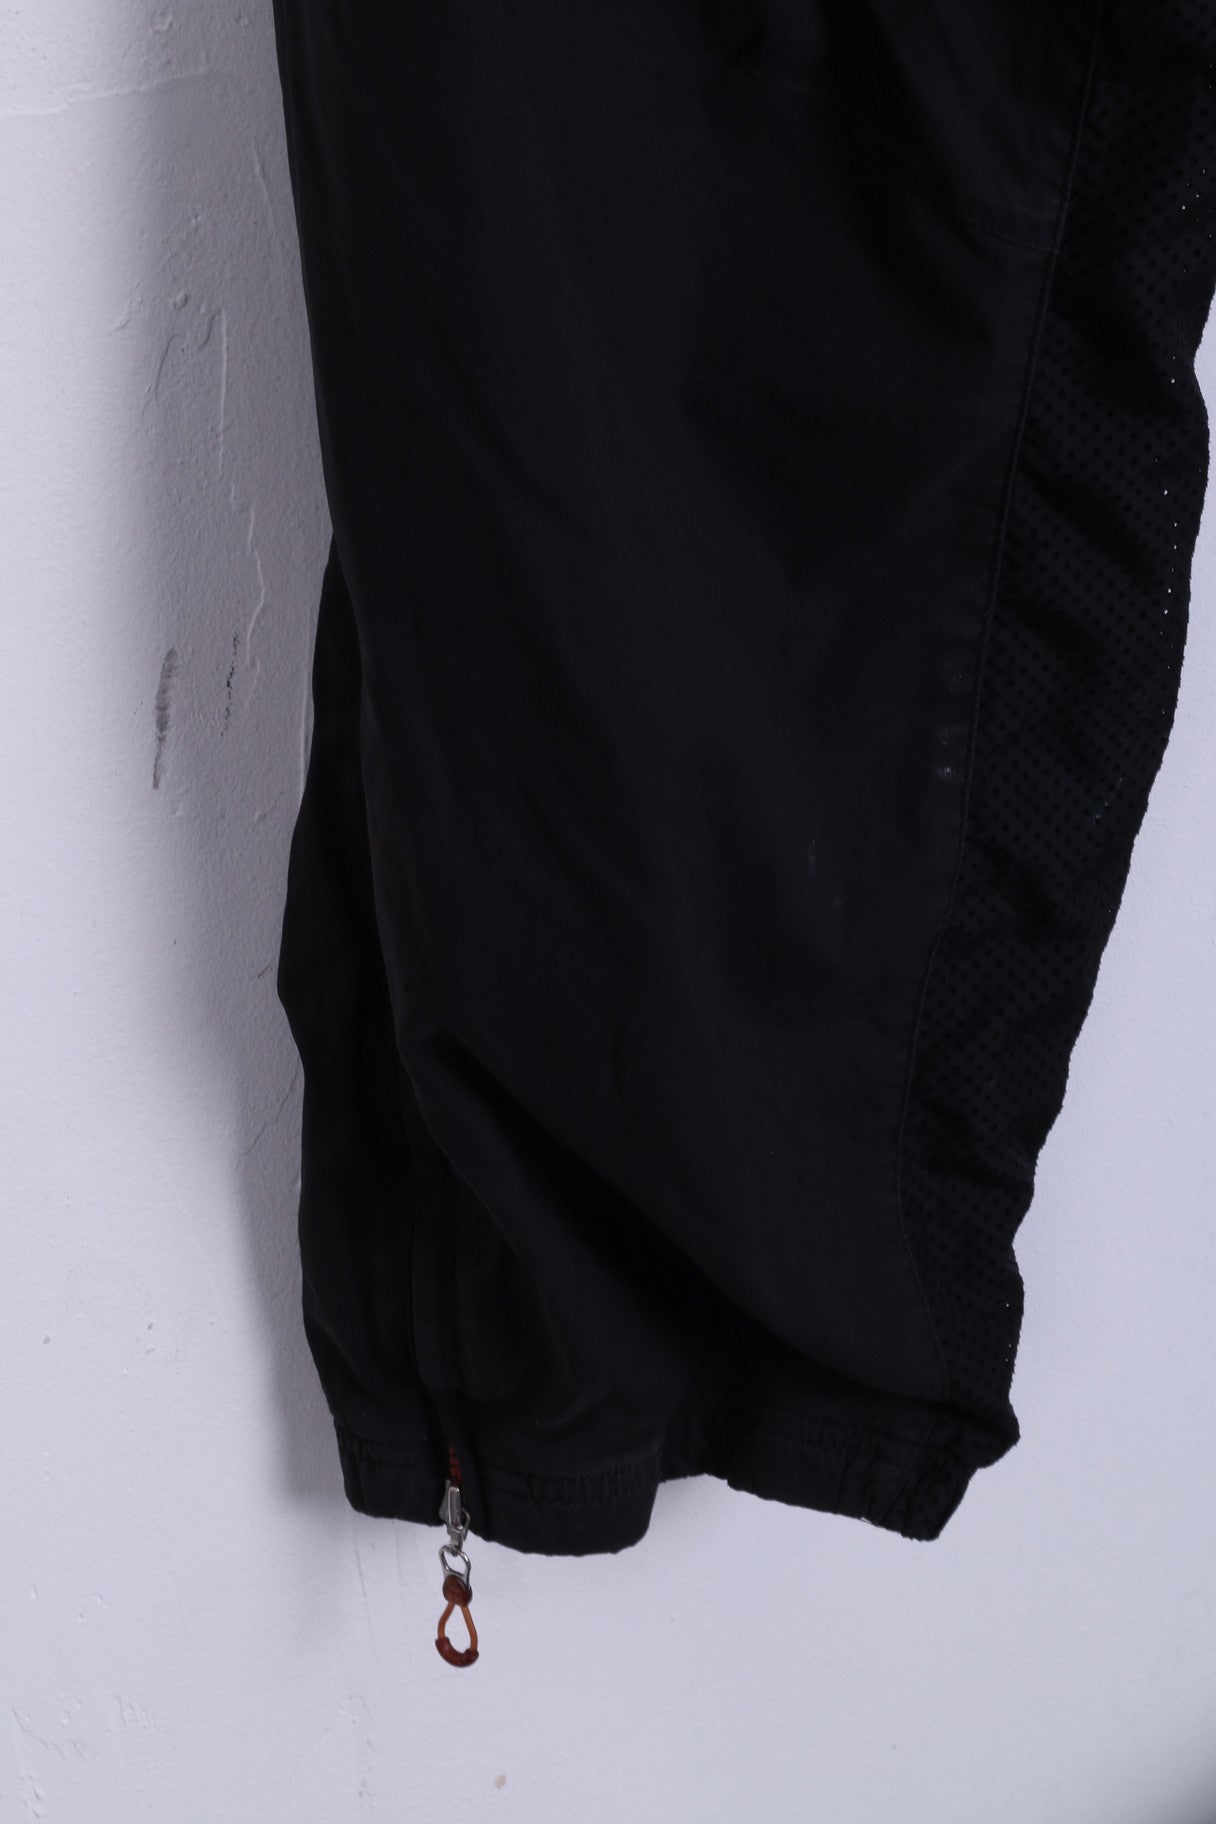 Adidas Pantalon de survêtement L pour homme Noir Pantalon d'entraînement Sport Deux poches